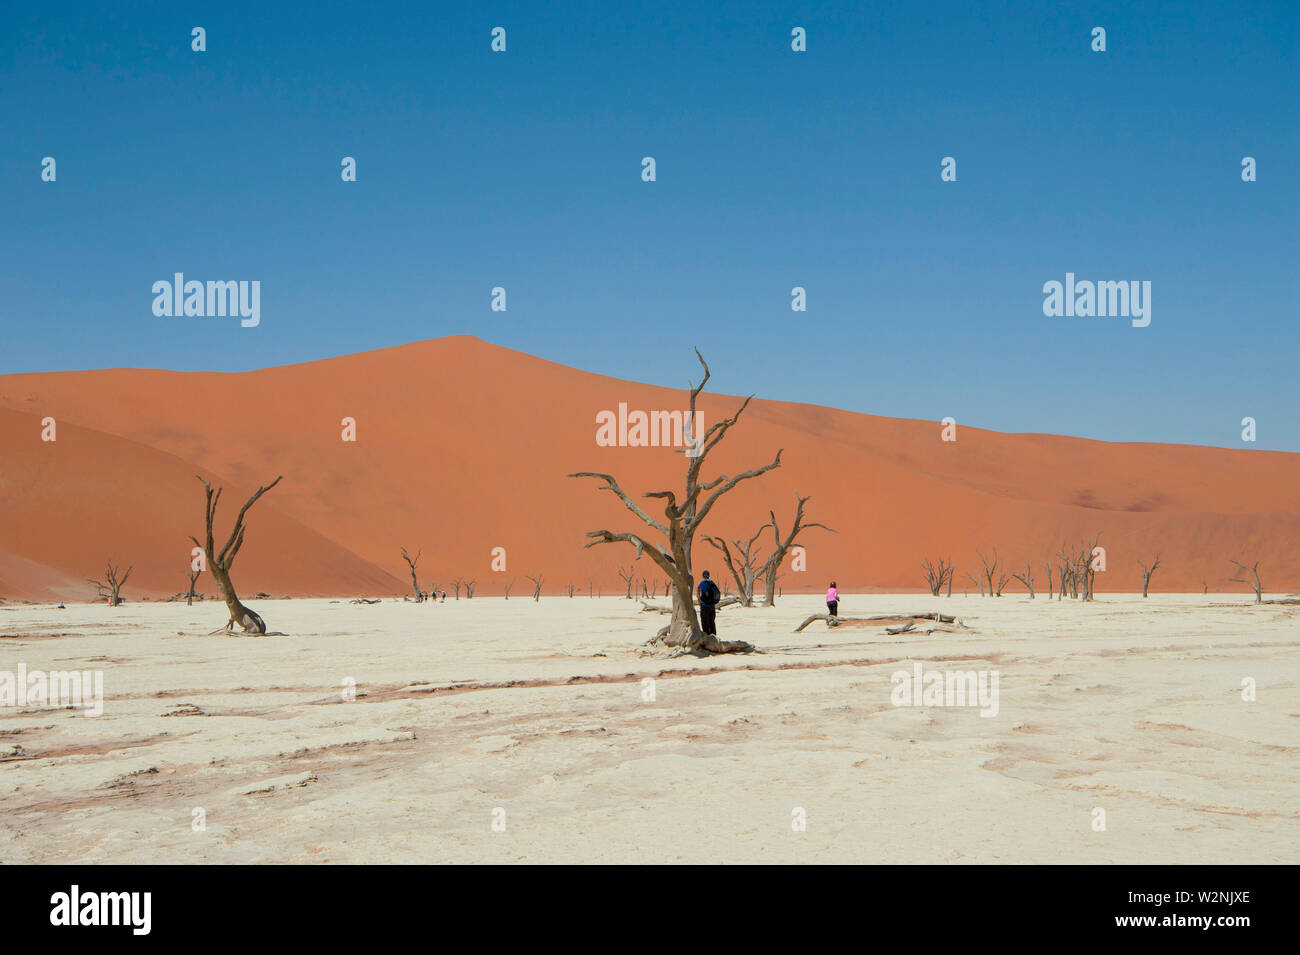 Dead Vlei, mit trockenen 900 Jahre alte Bäume stehen in der salzpfanne umgeben von aufragenden roten Sanddünen. Namib-Naukluft-Nationalpark, Namibia. Stockfoto